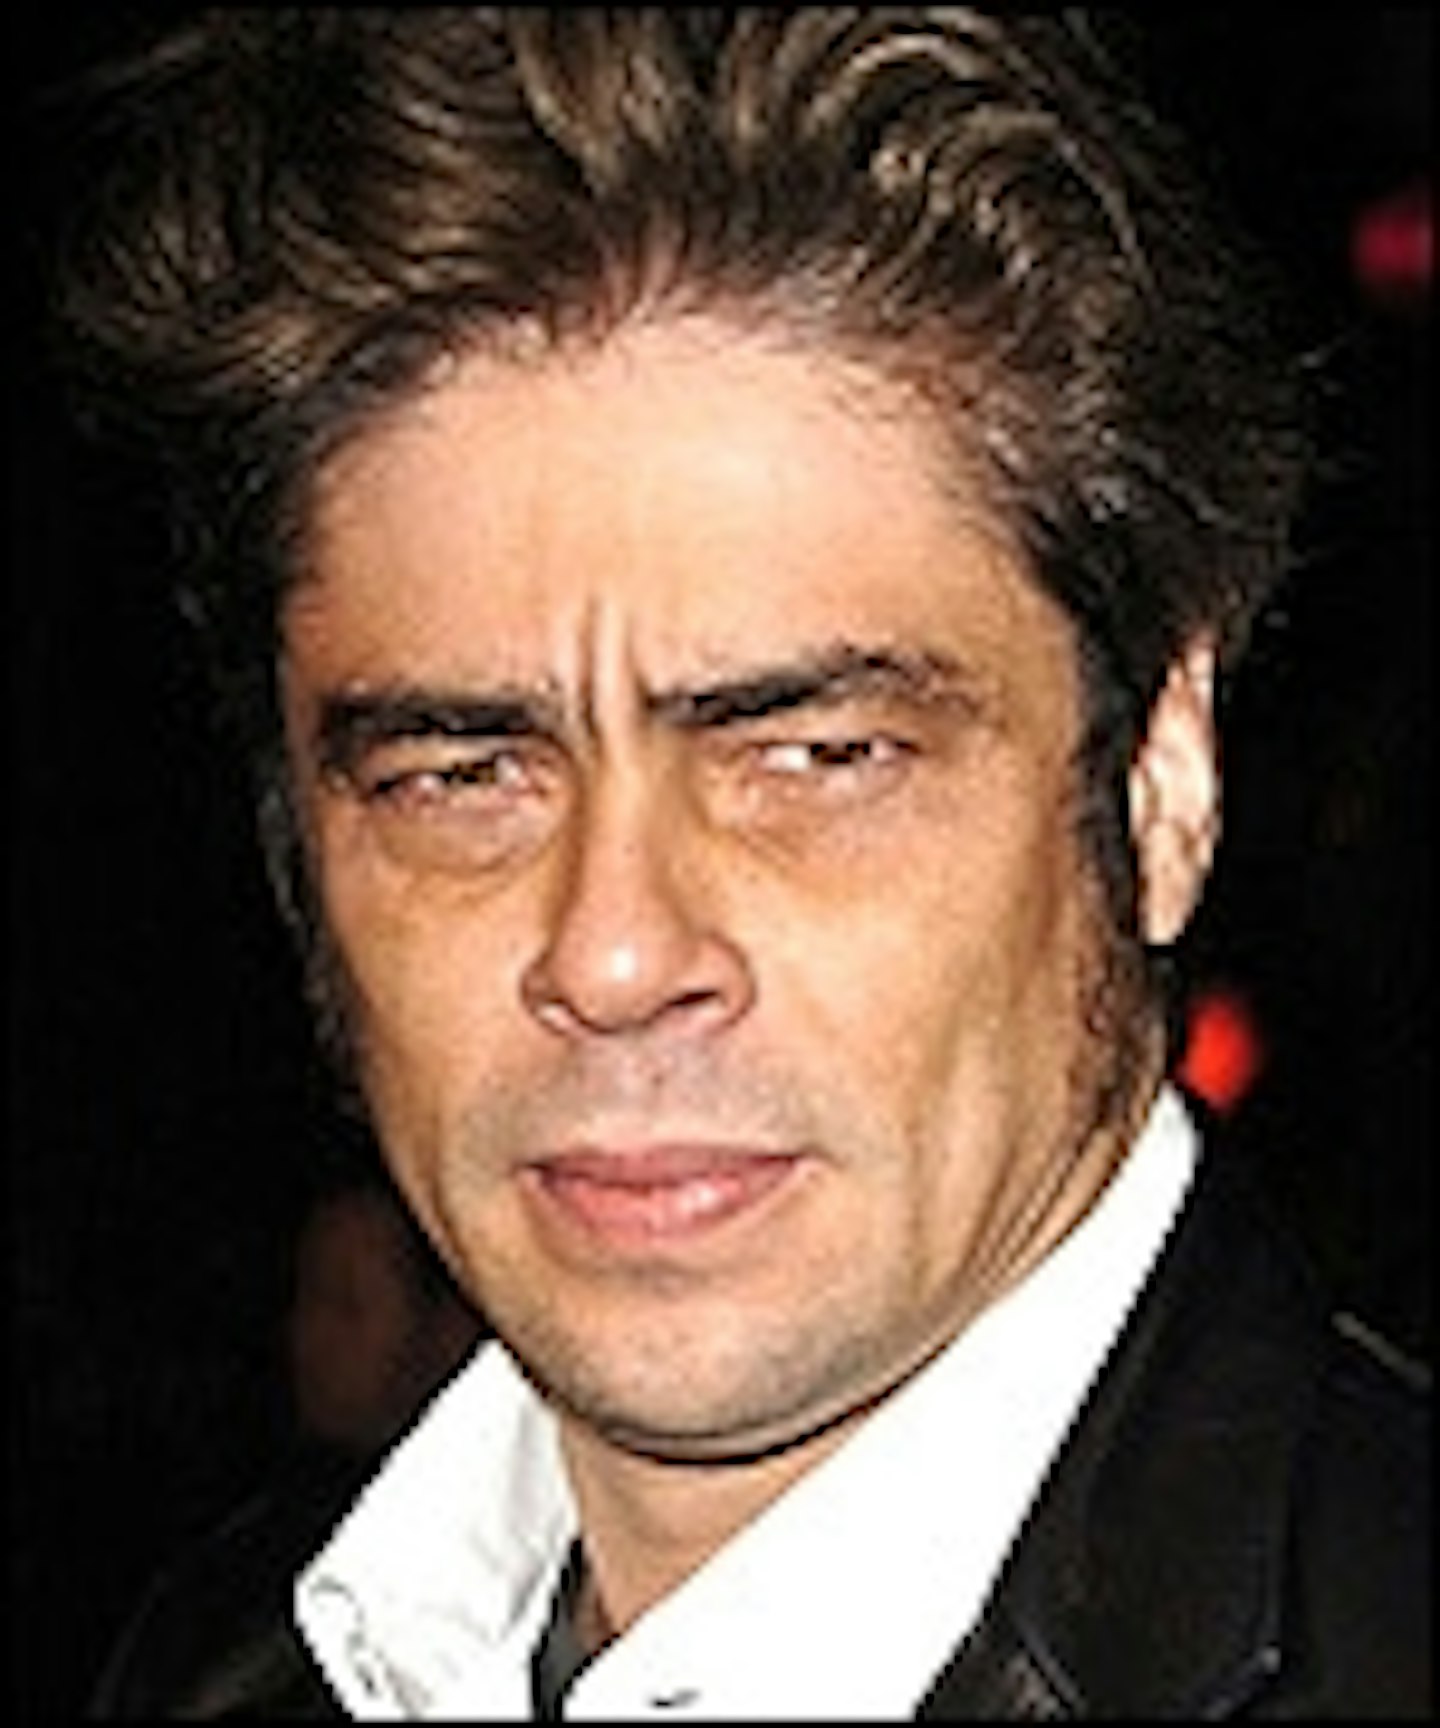 Benicio Del Toro As Trek Sequel Villain?